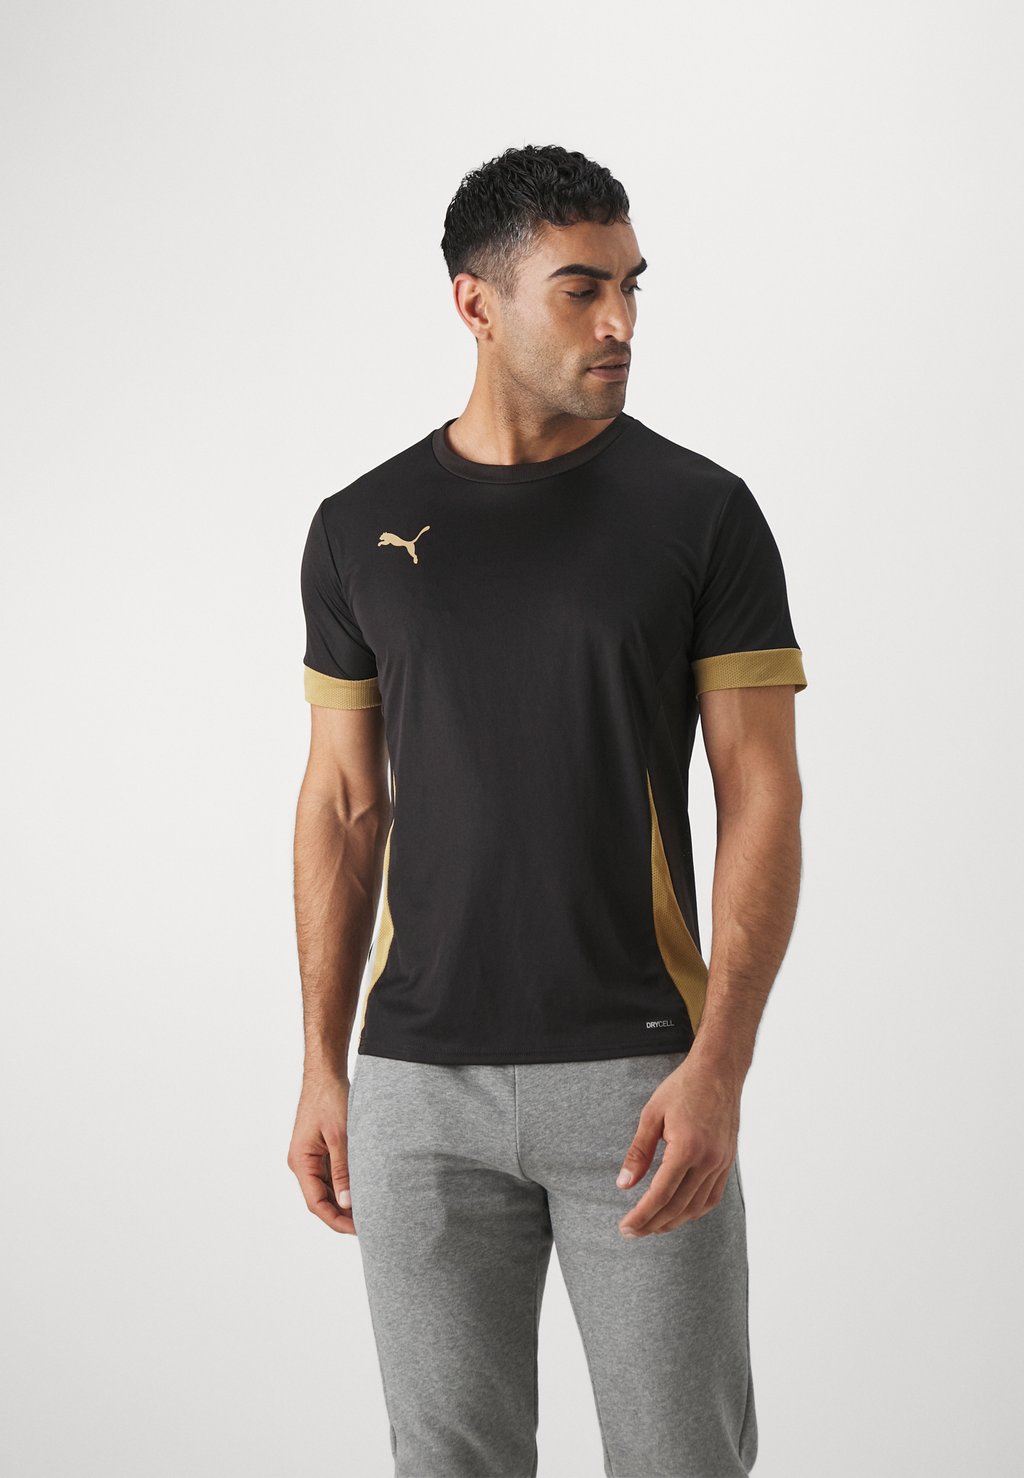 Спортивная футболка Teamgoal Matchday Puma, цвет black/gold/matte gold цена и фото